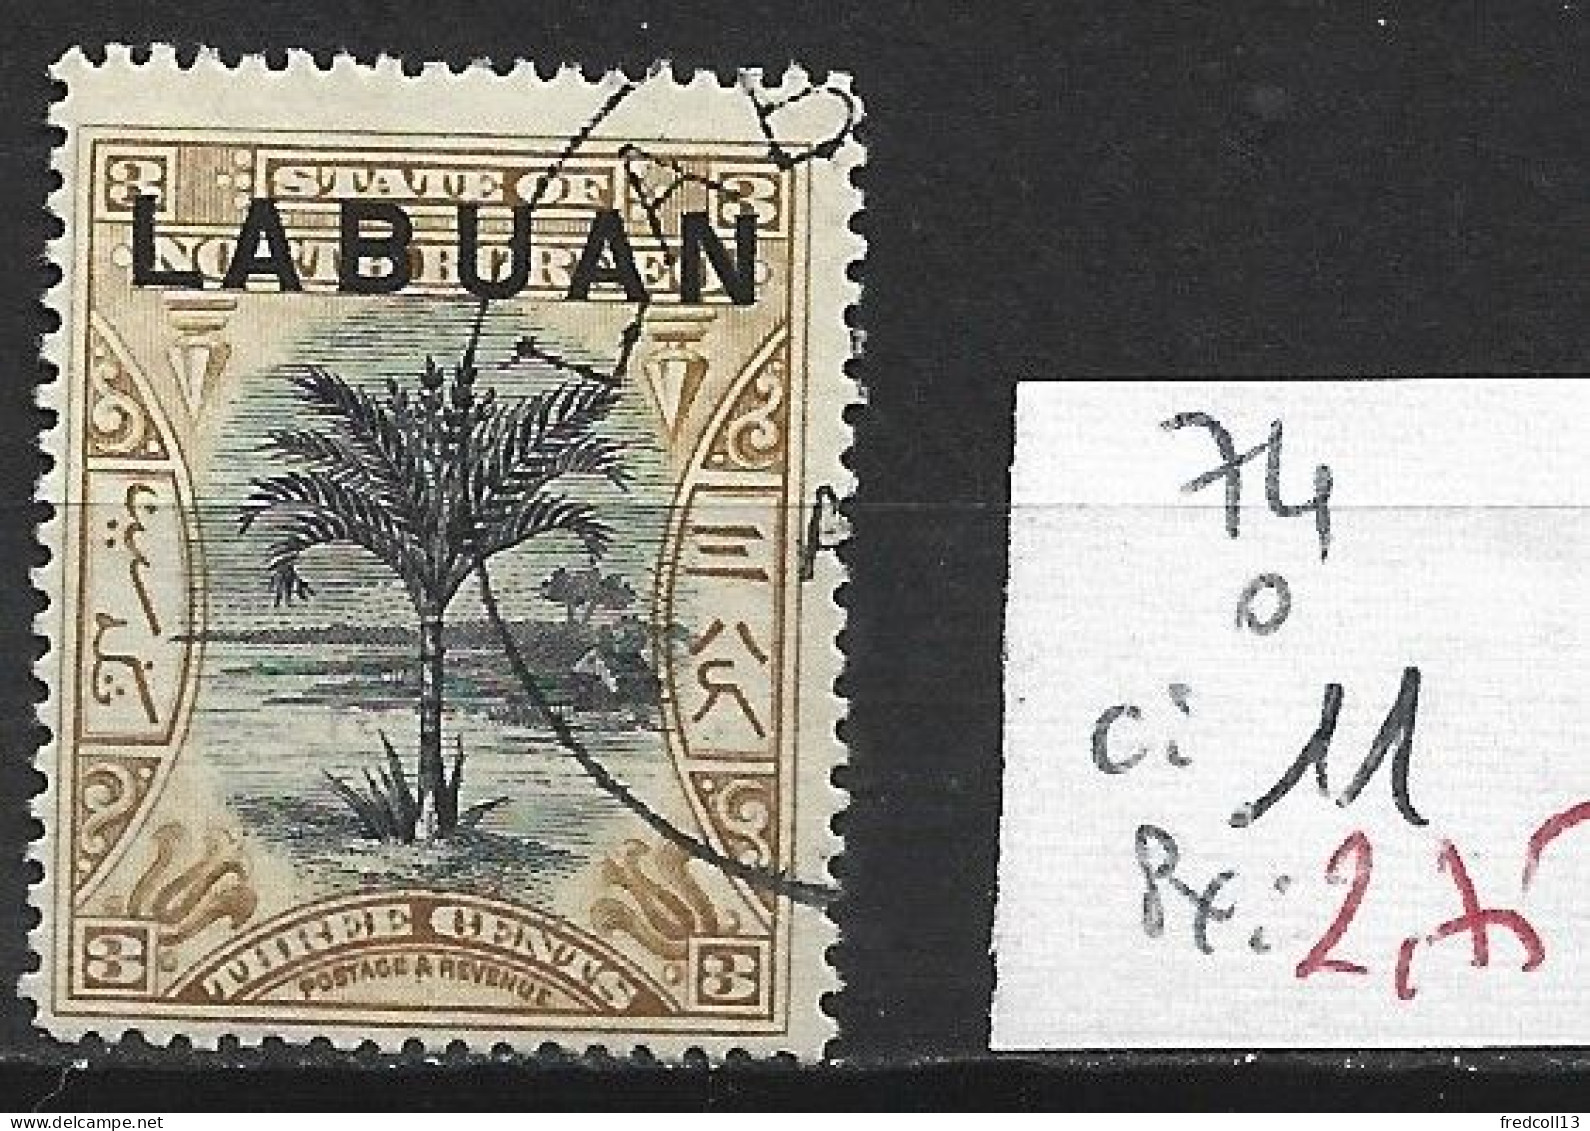 LABUAN 74 Oblitéré Côte 11 € - Bornéo Du Nord (...-1963)